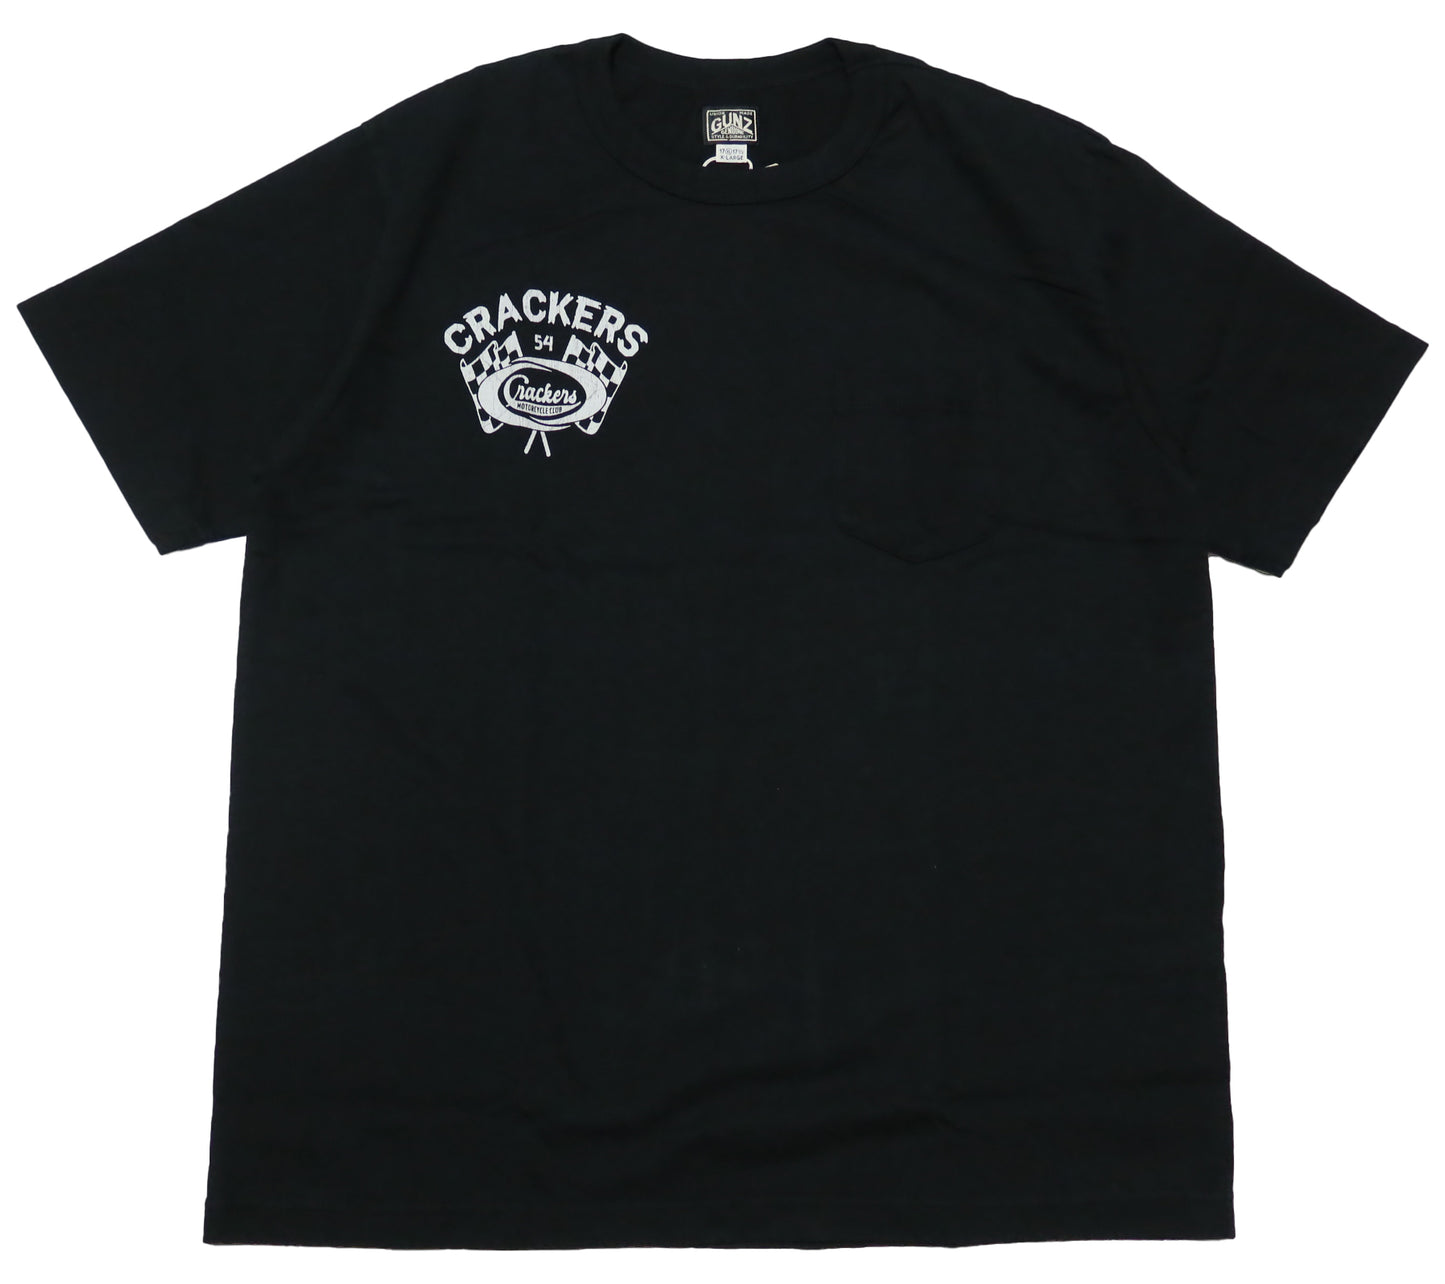 GUNZ ガンズ ポケットTシャツ 半袖 CRACKERS M.C. メンズ 444G083 ブラック